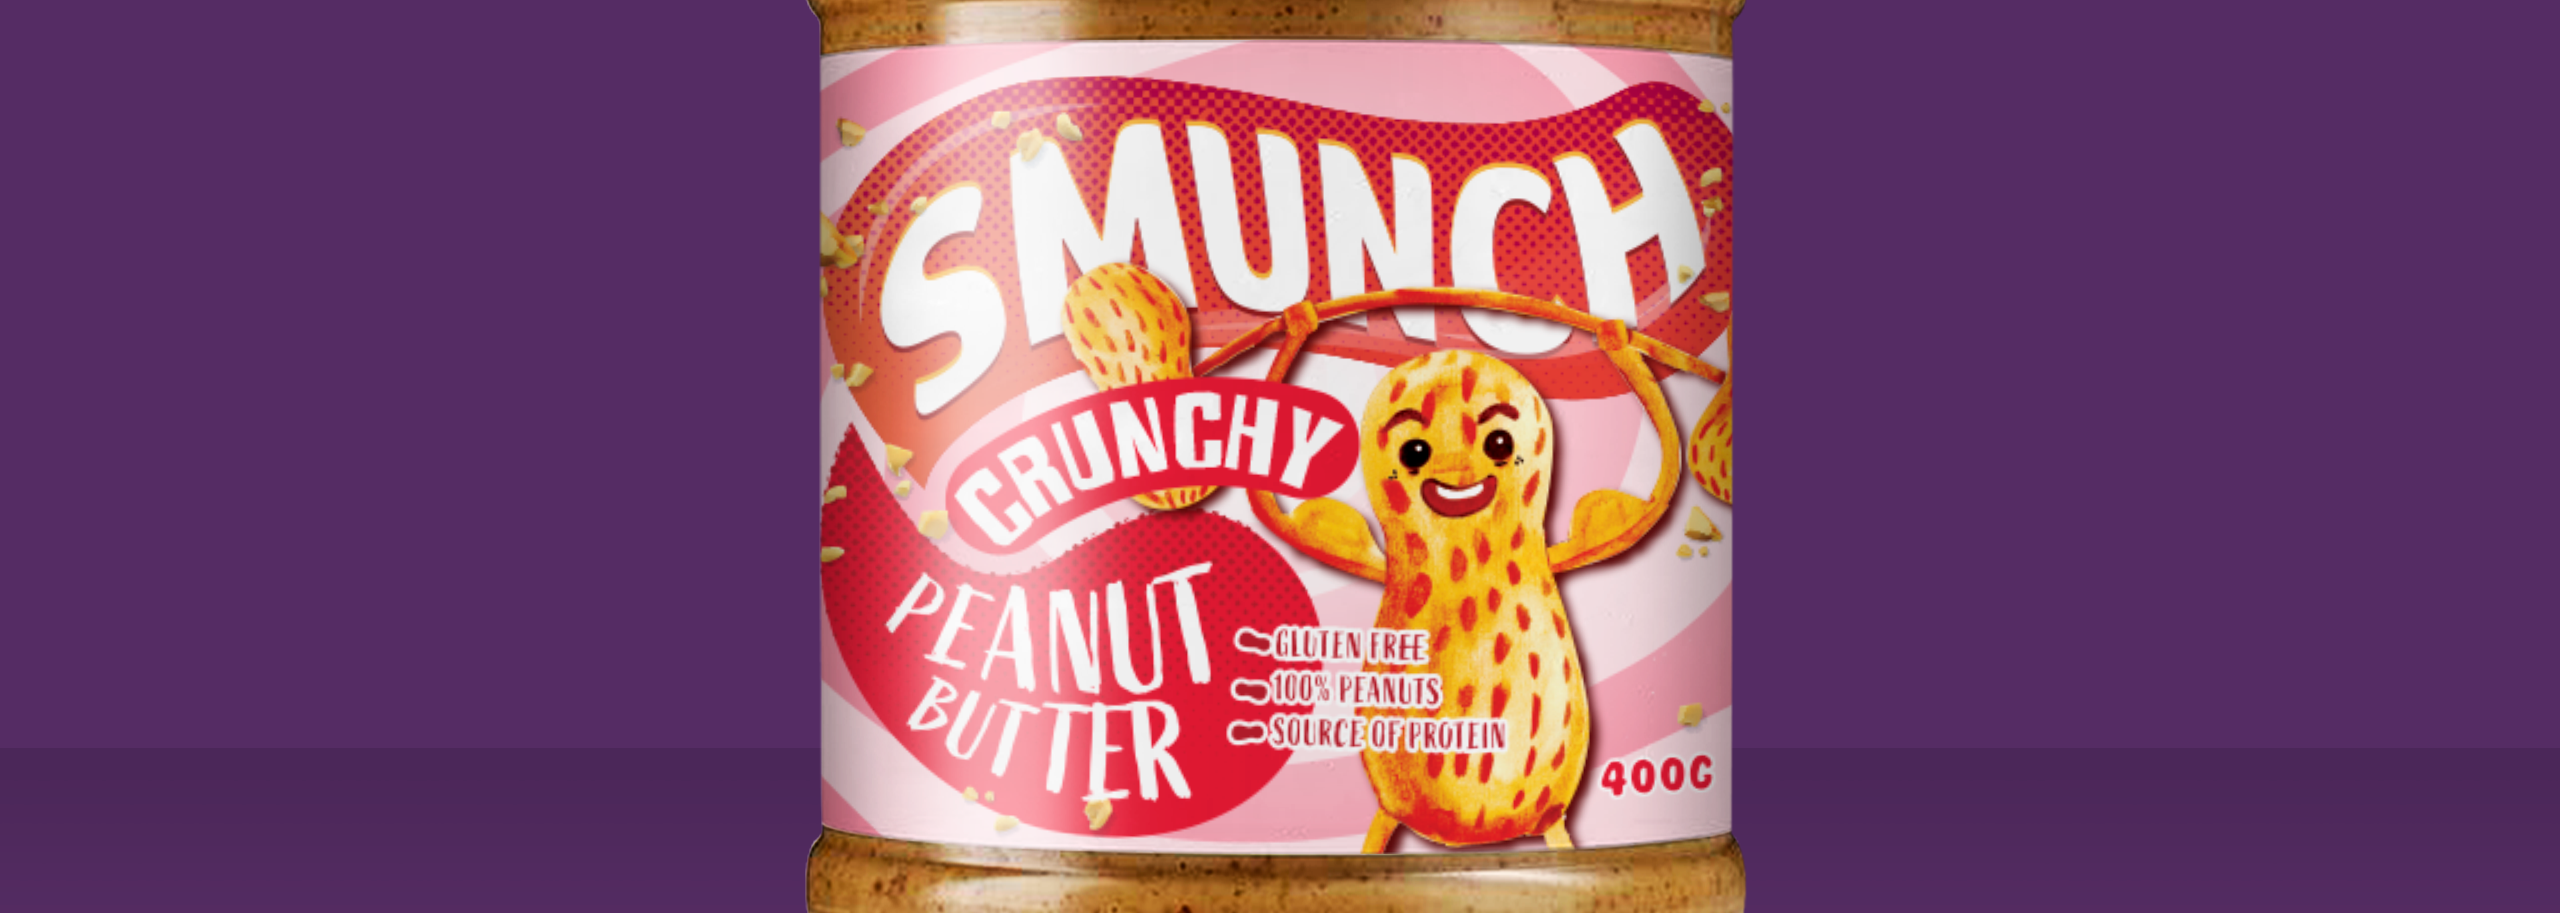 Smunch Peanut Butter-2